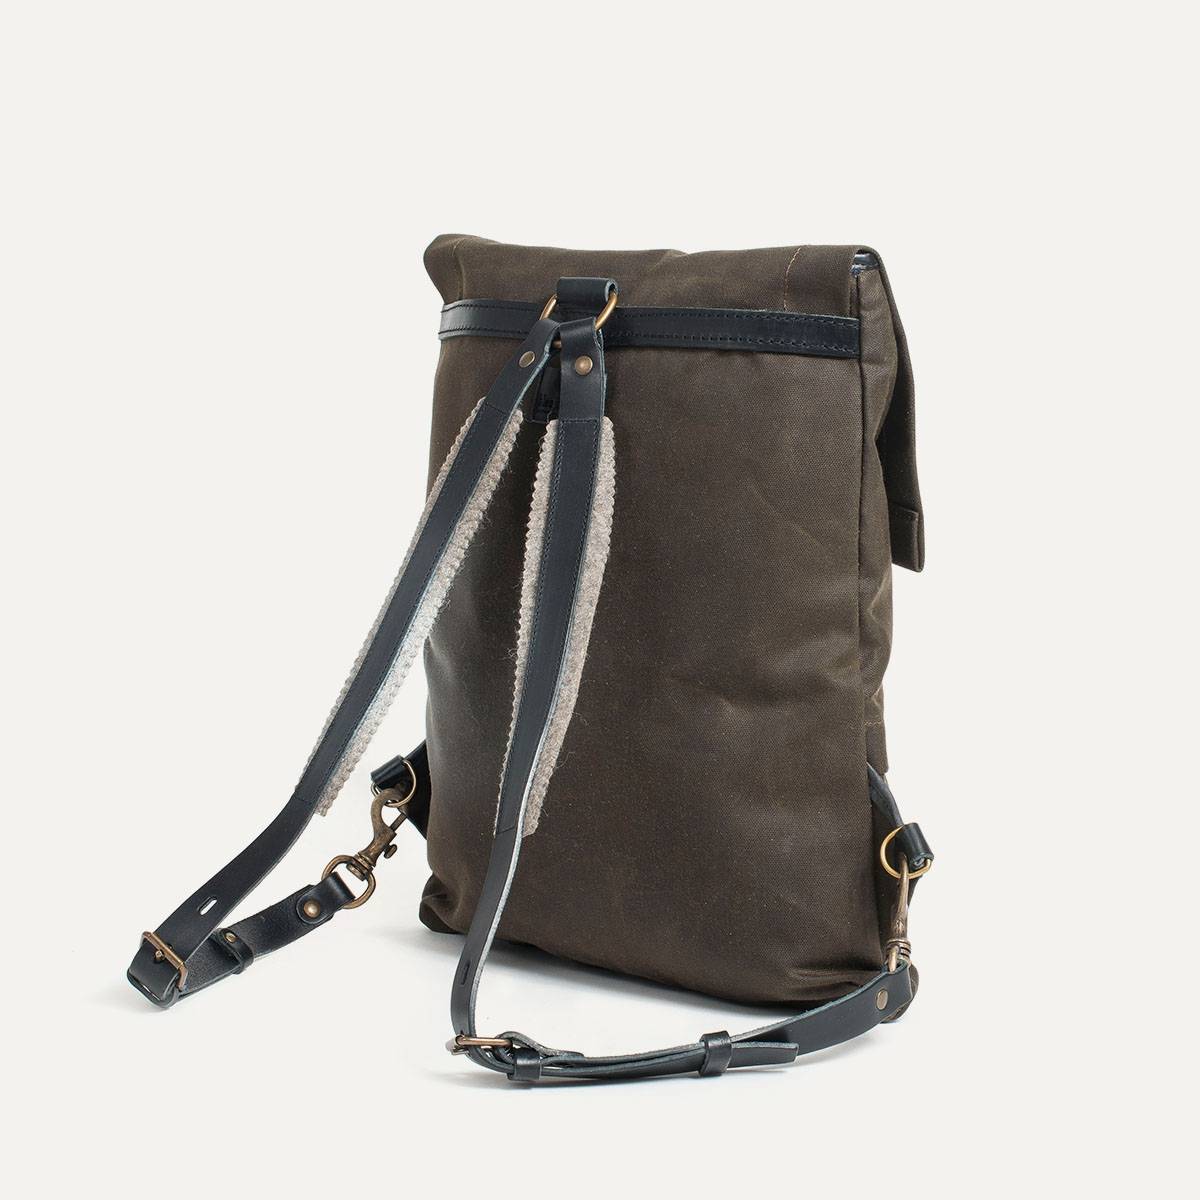 Coursier backpack WAXY - Khaki/Black (image n°3)